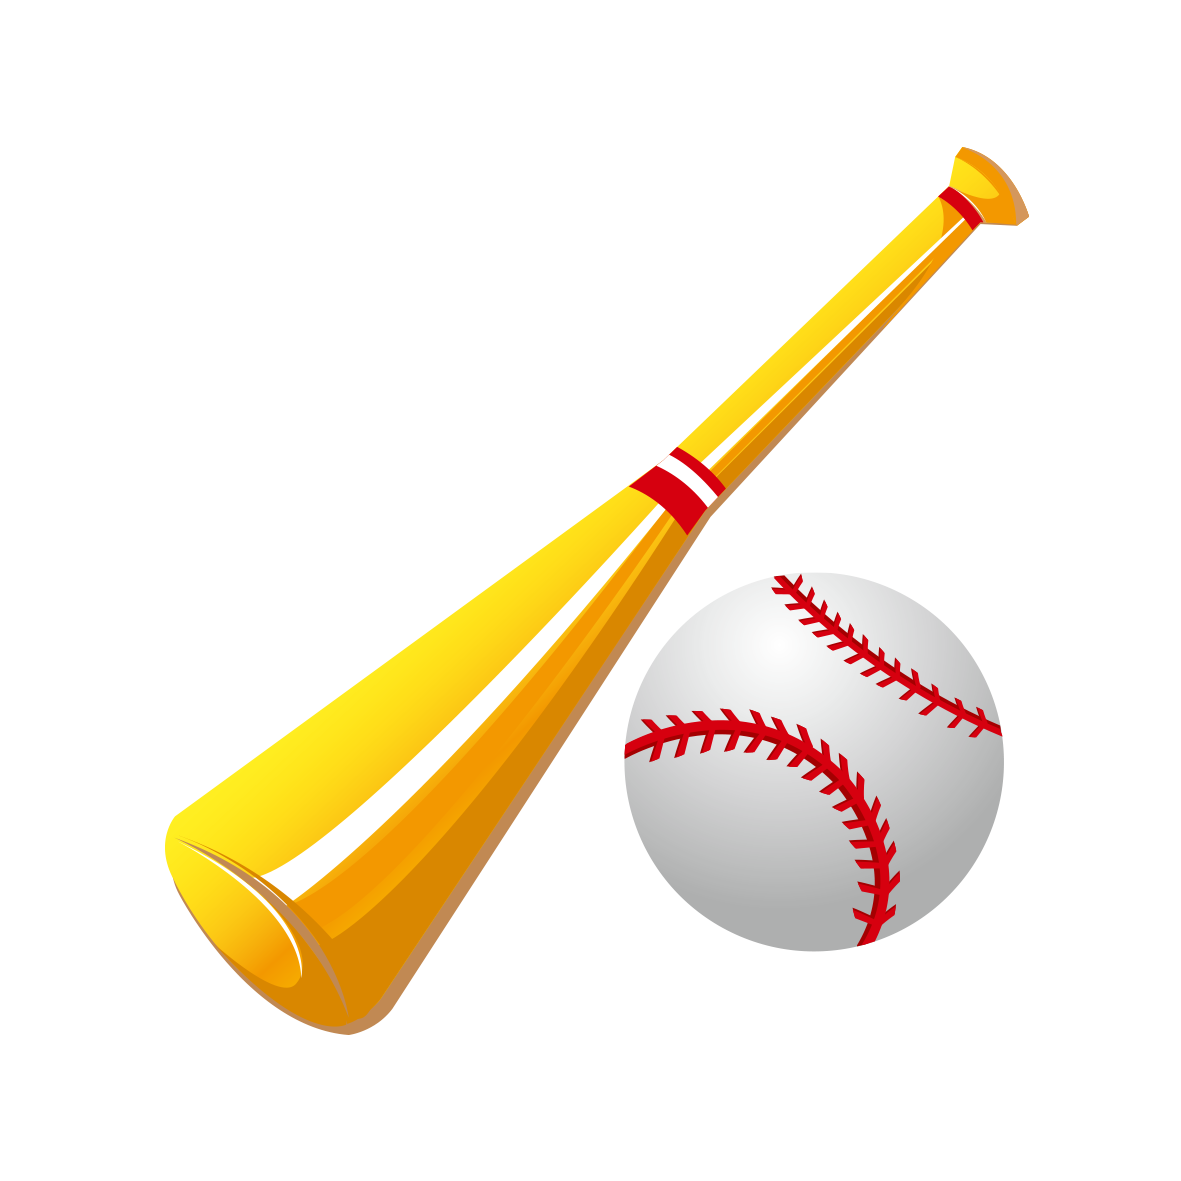 Baseball bat infield fly. Sports clipart art